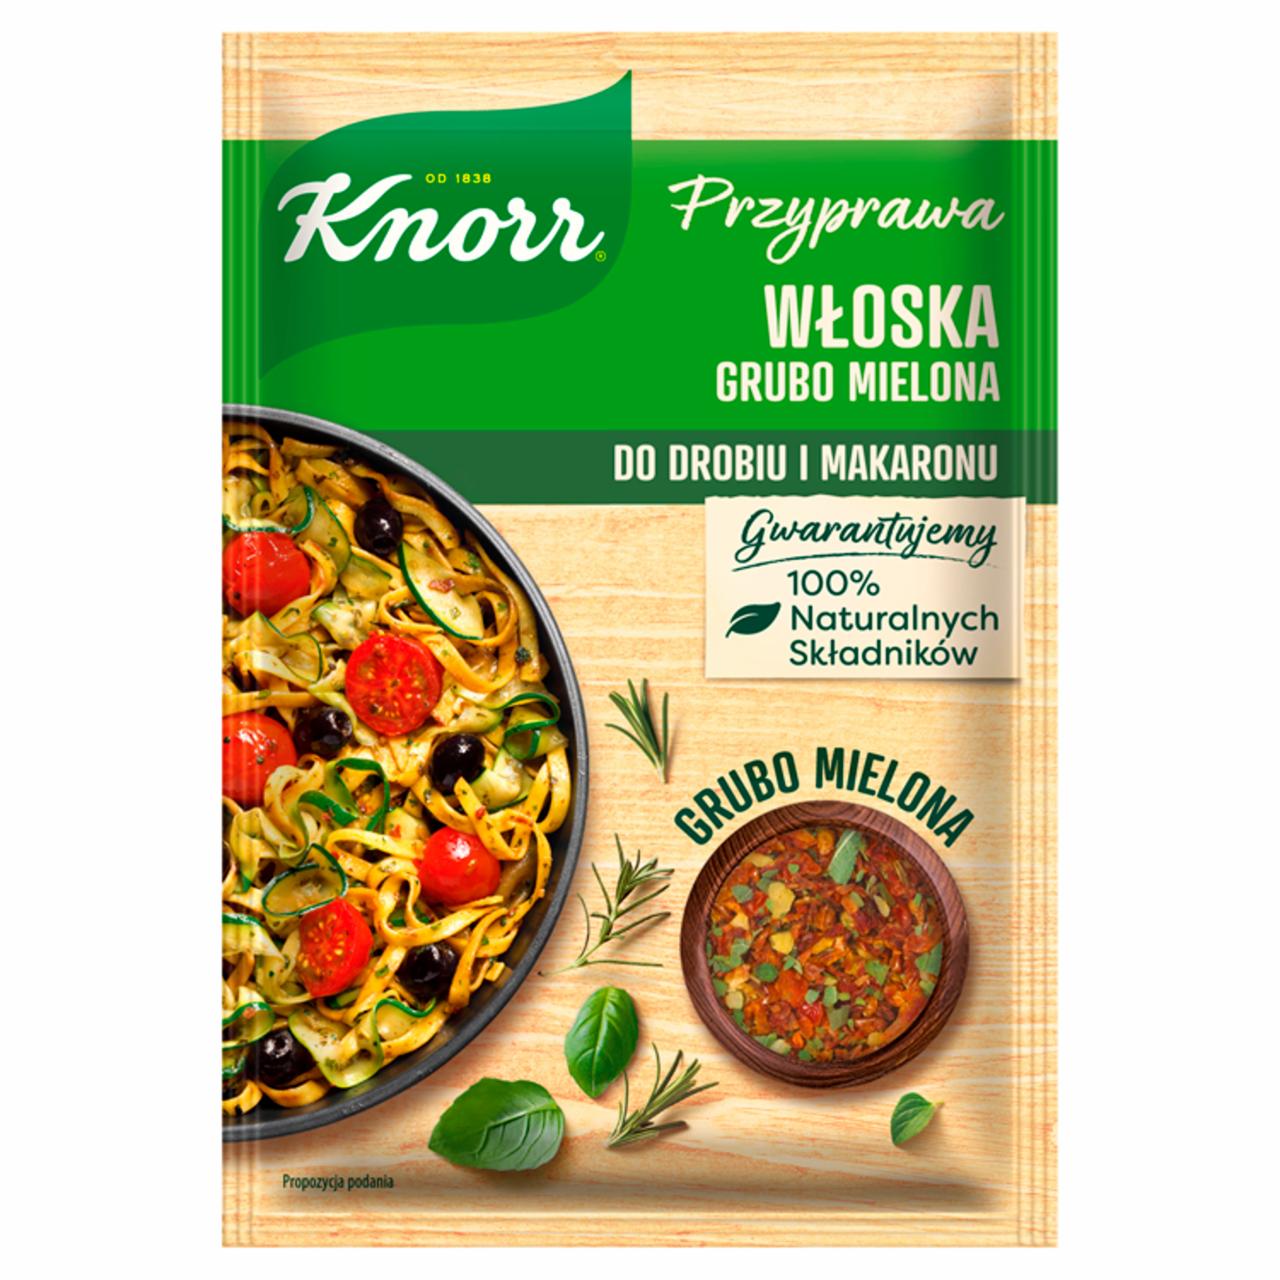 Zdjęcia - Knorr Przyprawa włoska grubo mielona 20 g